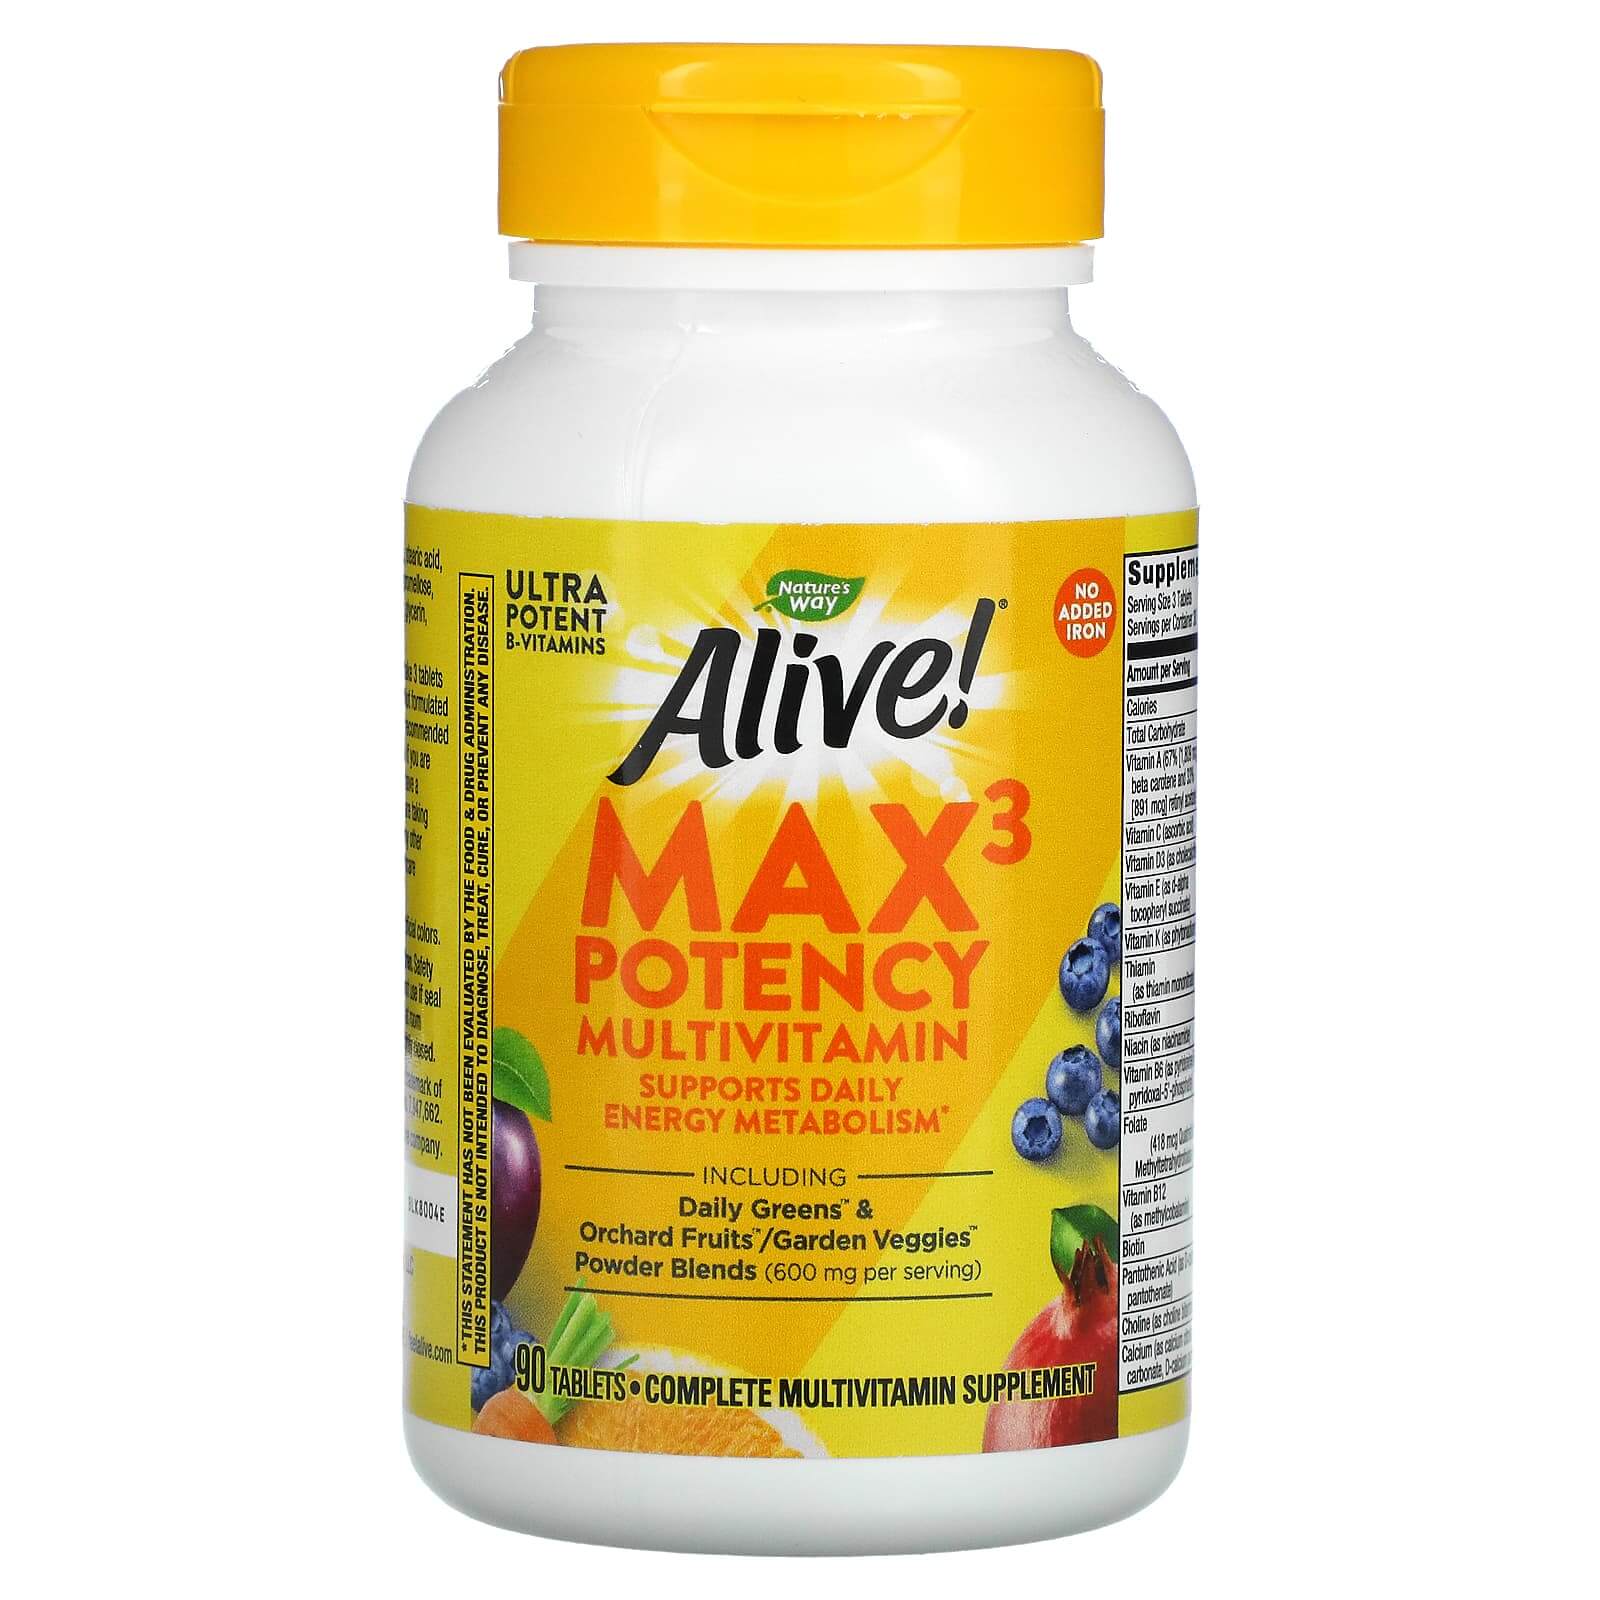 Мультивитамины Max3 Potency без добавления железа 90 таблеток, Nature's Way nature s way alive max6 potency мультивитамины 90 капсул